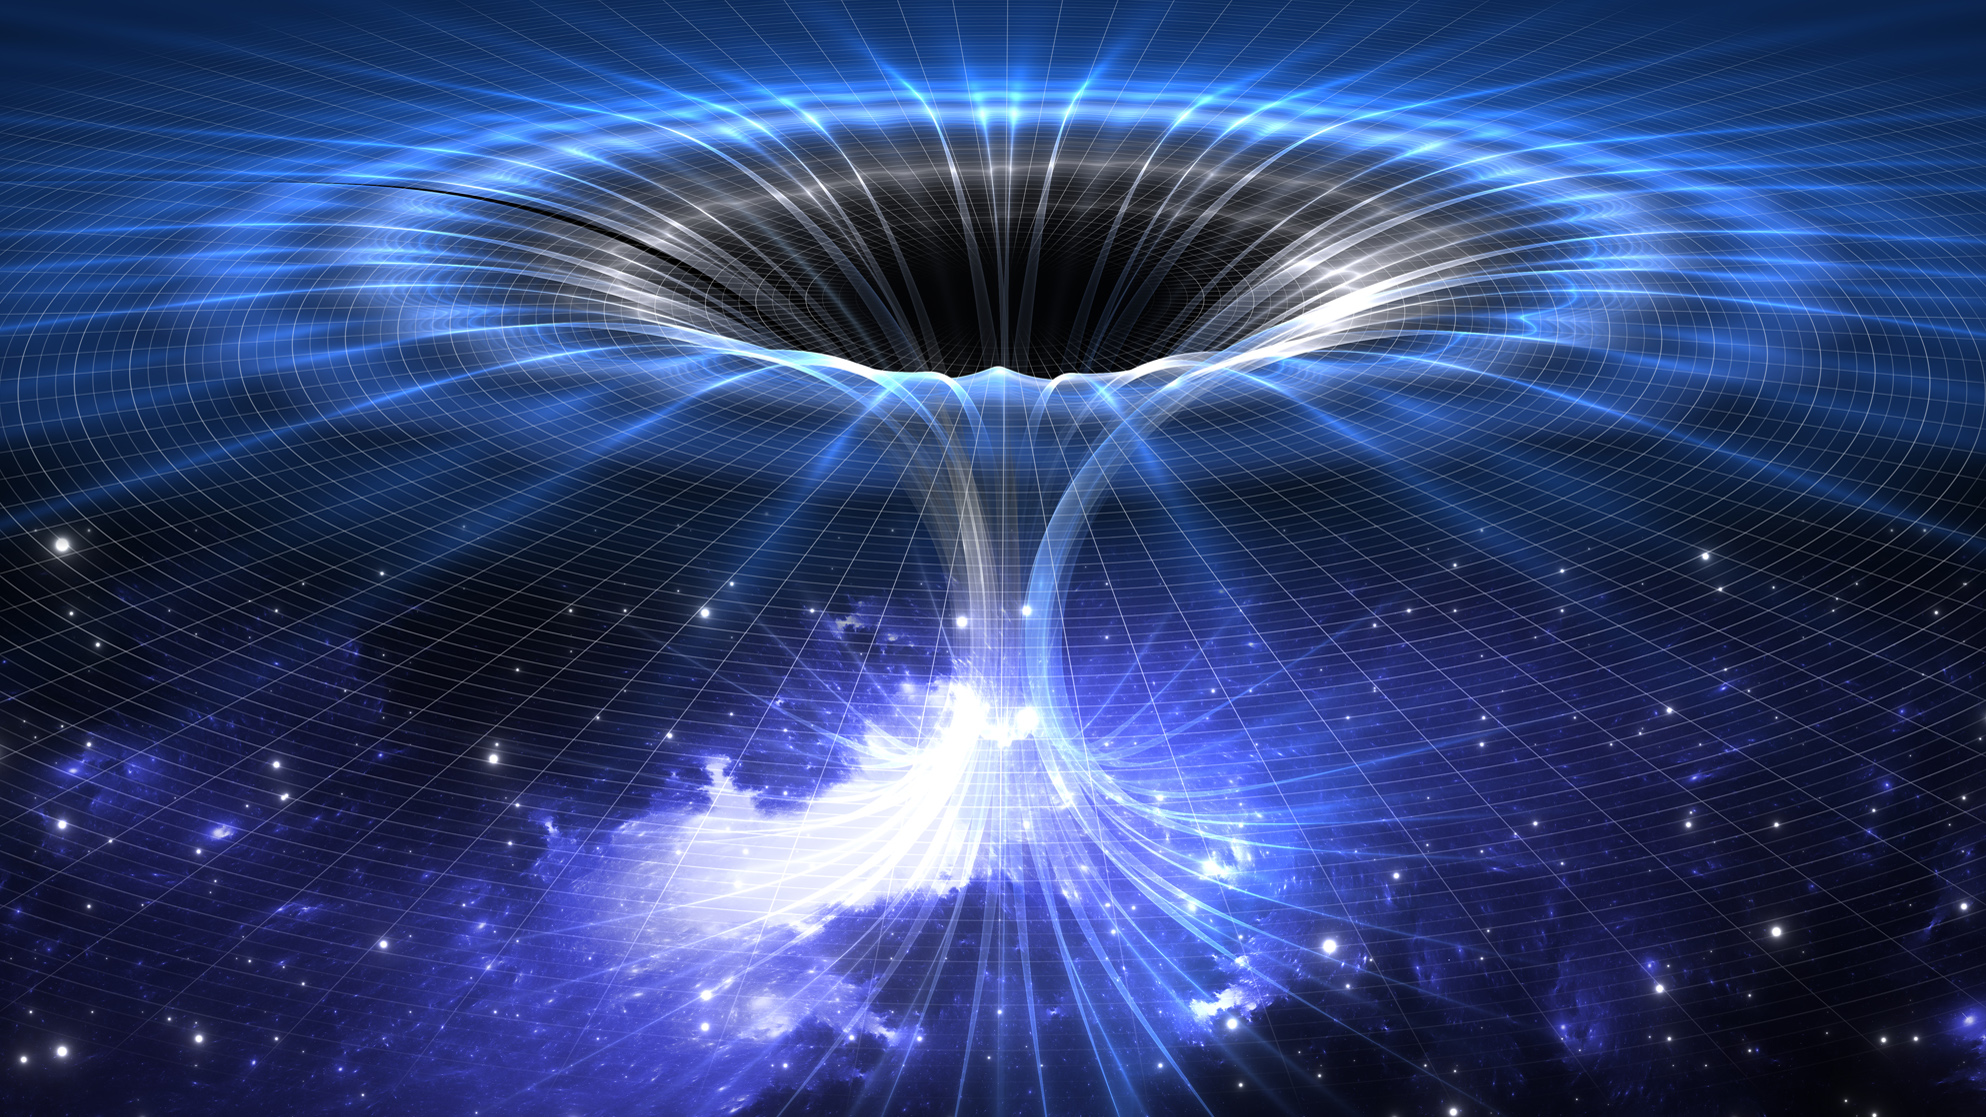 Black Holes Fall Into Wormholes